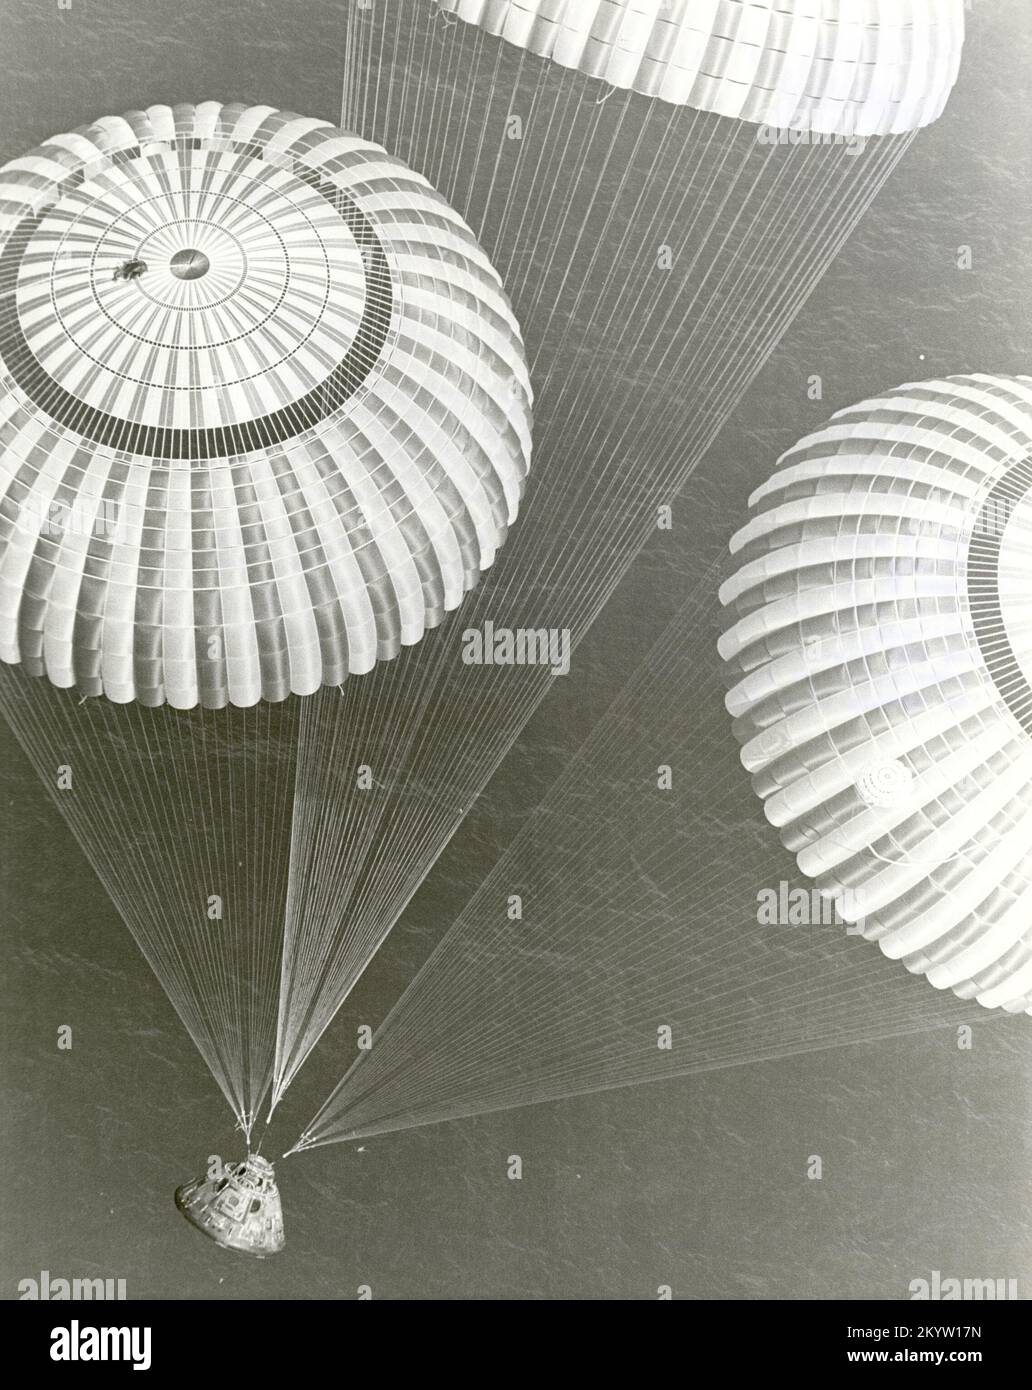 L'engin spatial Apollo 17, qui contient des astronautes Eugene A. Cernan, Ronald E. Evans et Harrison H. Schmitt, a glissé vers un splashdown sûr à 14:25 HNE le 19 décembre 1972, 648 kilomètres (350 milles marins) au sud-est des Samoa américaines. Ils ont été transportés par hélicoptère de récupération vers l'URSS Ticonderoga un peu moins d'une heure après l'achèvement du sixième et dernier atterrissage en lunaire habité de la NASA dans le programme Apollo. Banque D'Images